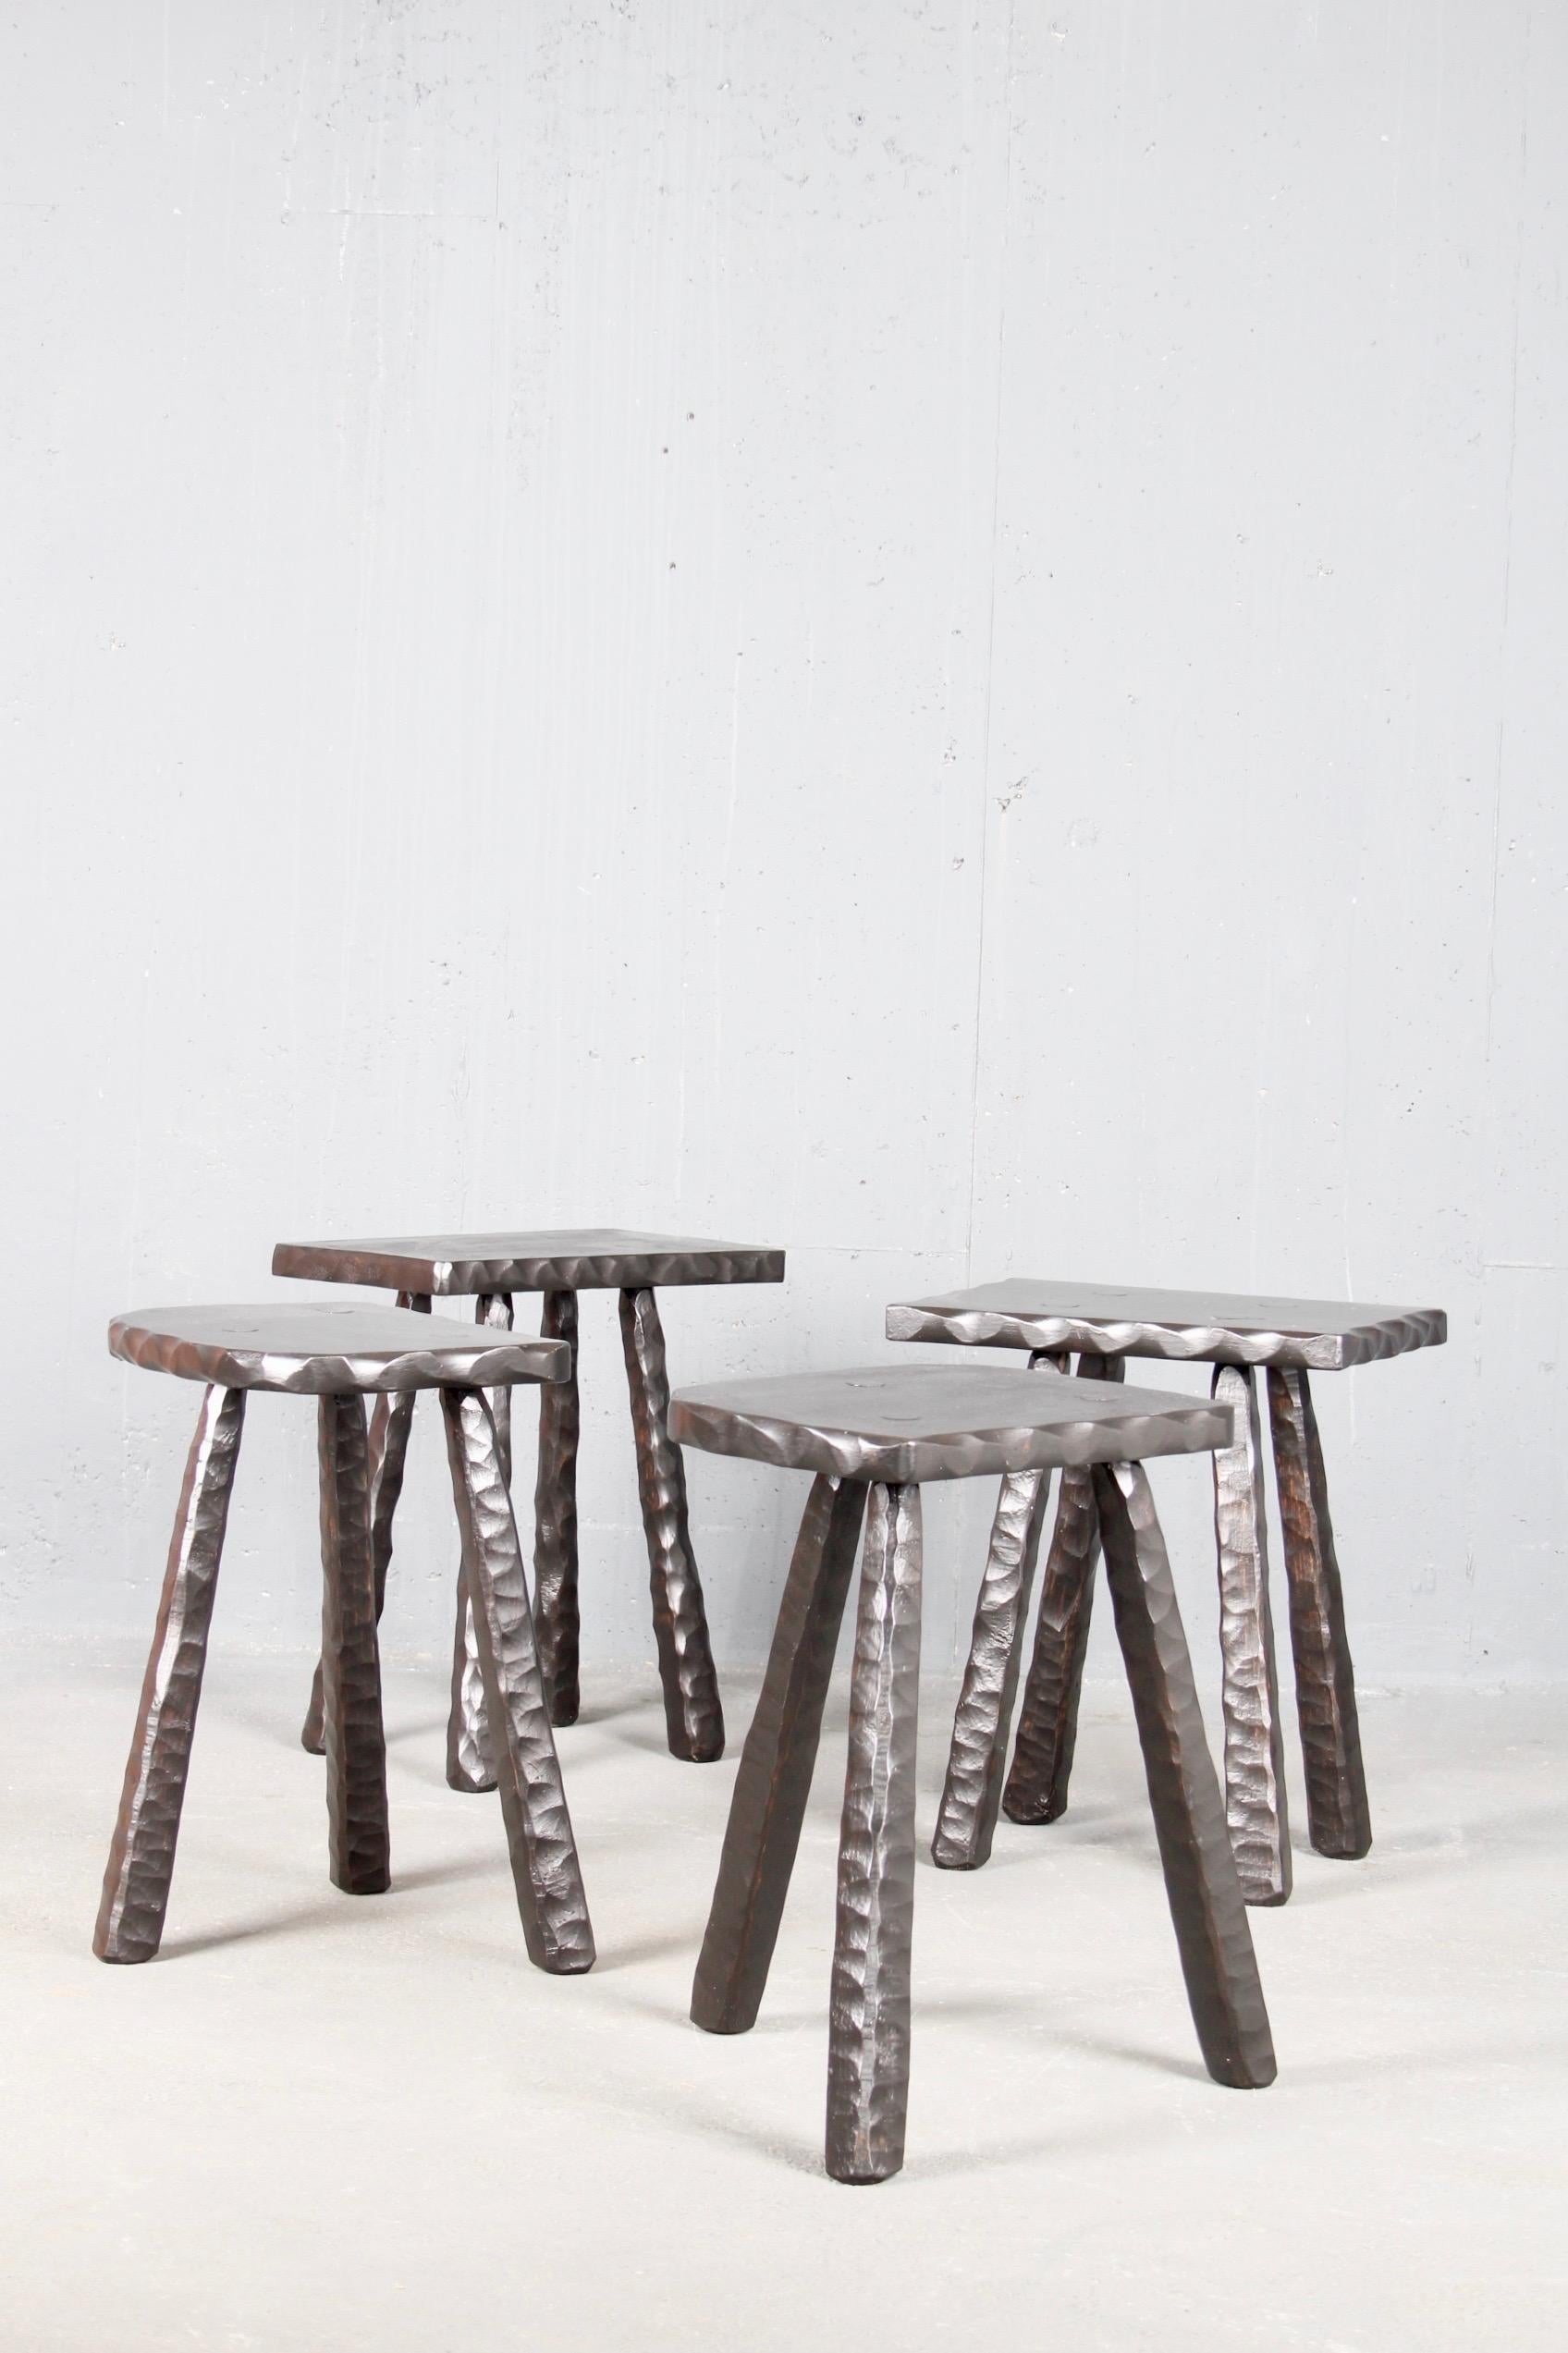 Set of 4 stools black painted wood.